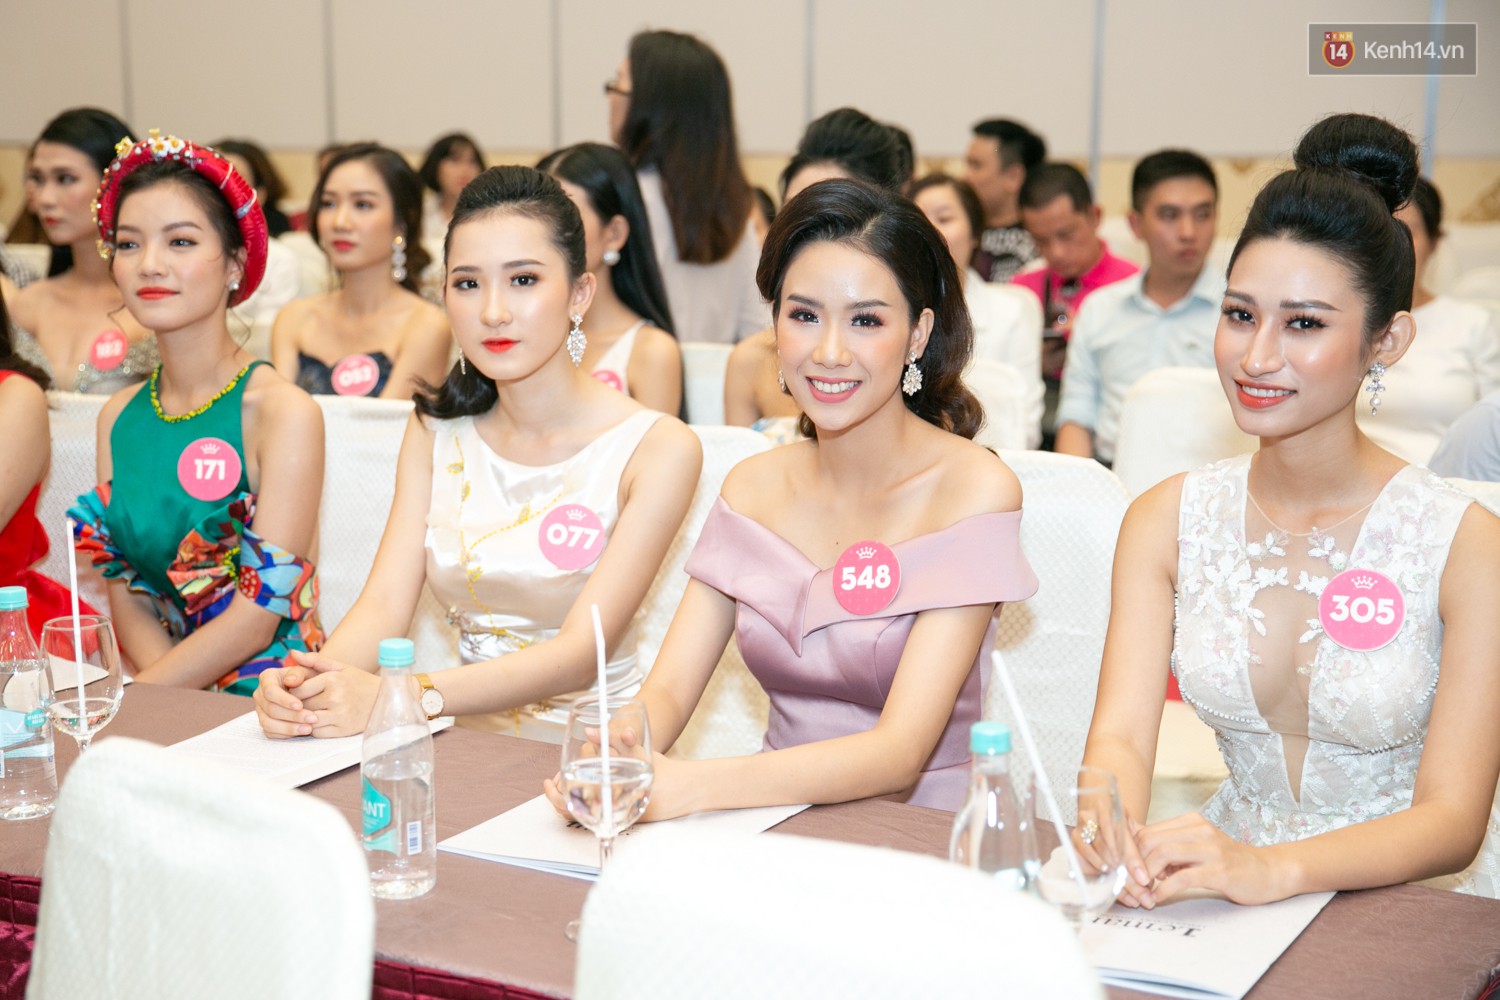 Trước thềm chung kết, hé lộ cận cảnh vương miện, quyền trượng giá trị của Tân Hoa hậu Việt Nam 2018 - Ảnh 23.